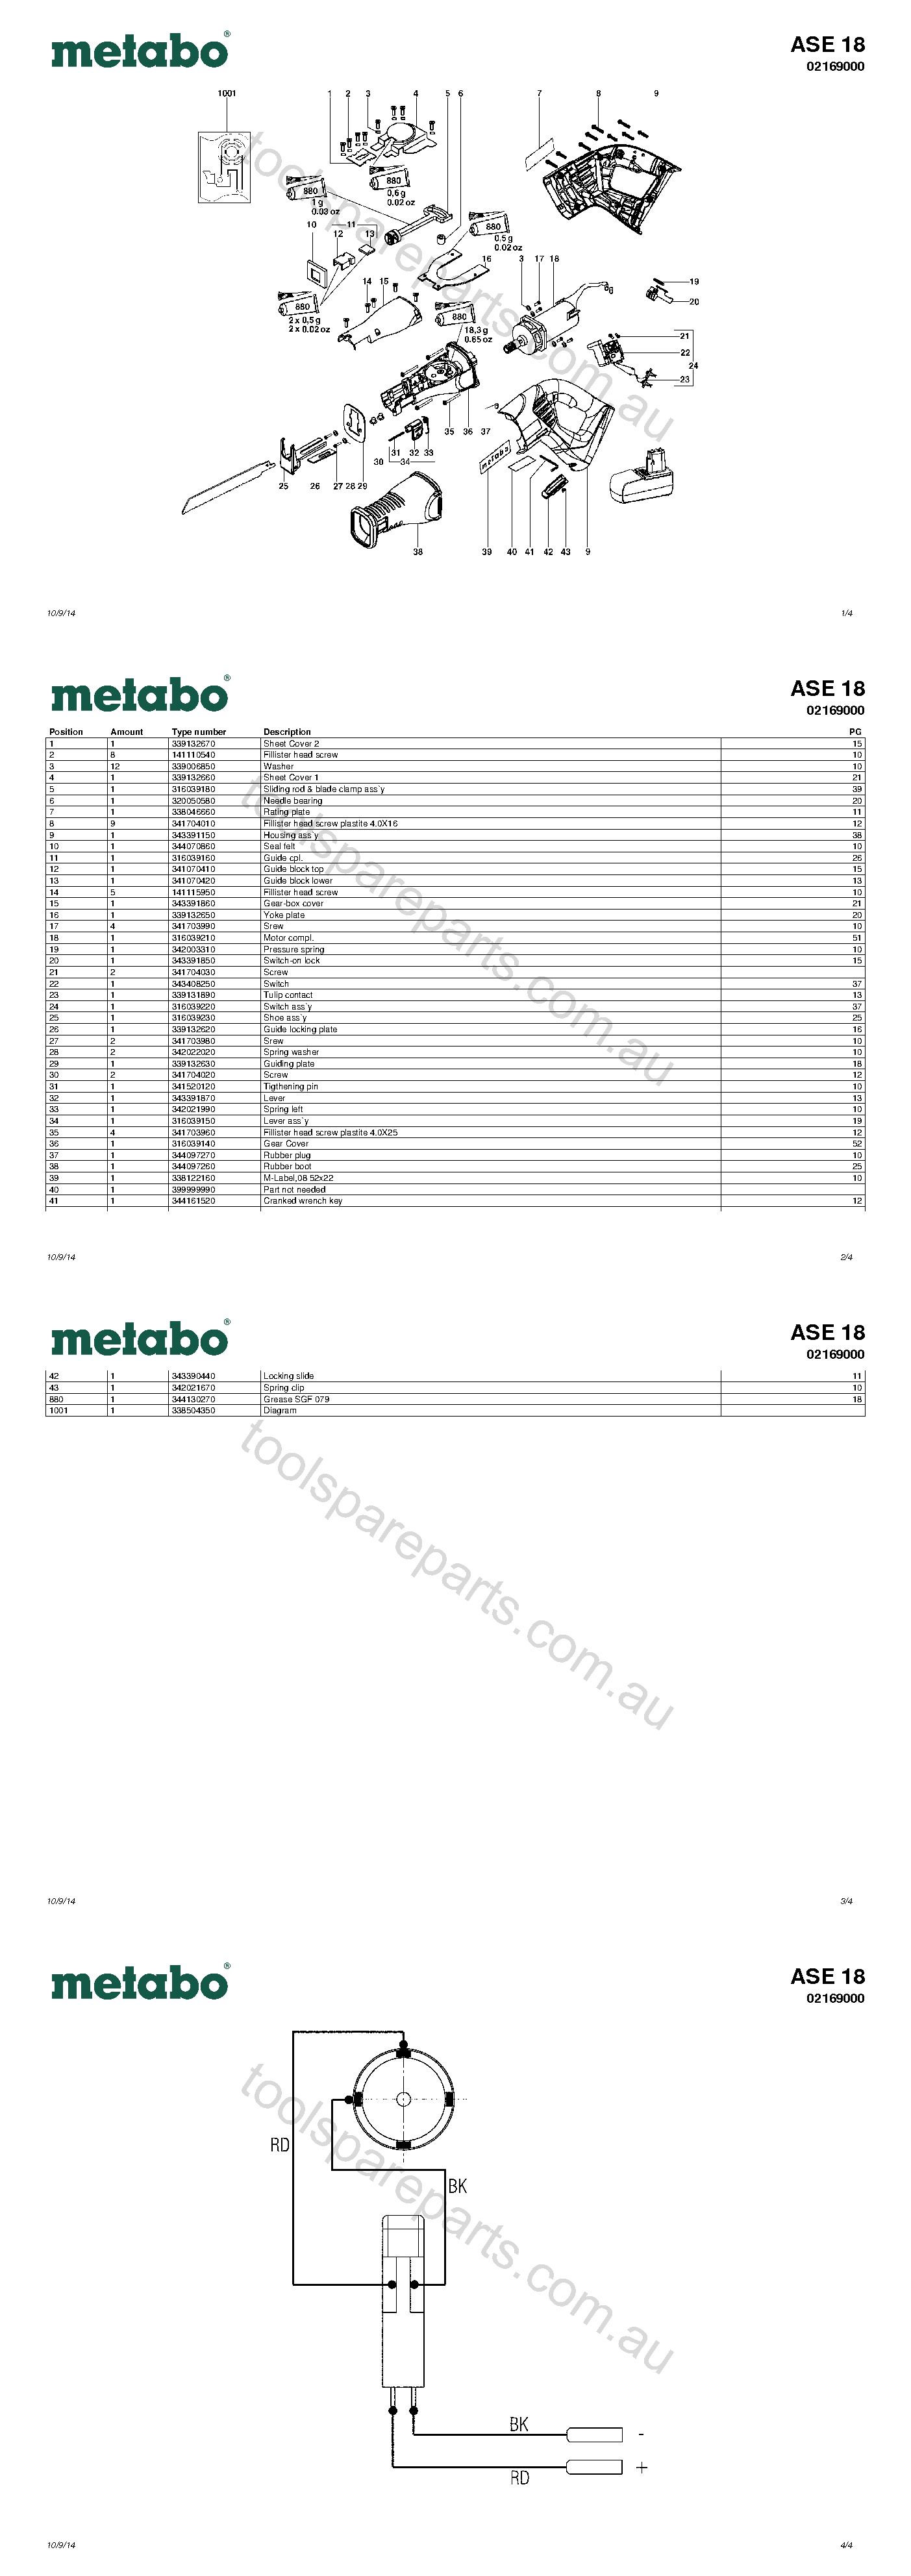 Metabo ASE 18 02169000  Diagram 1